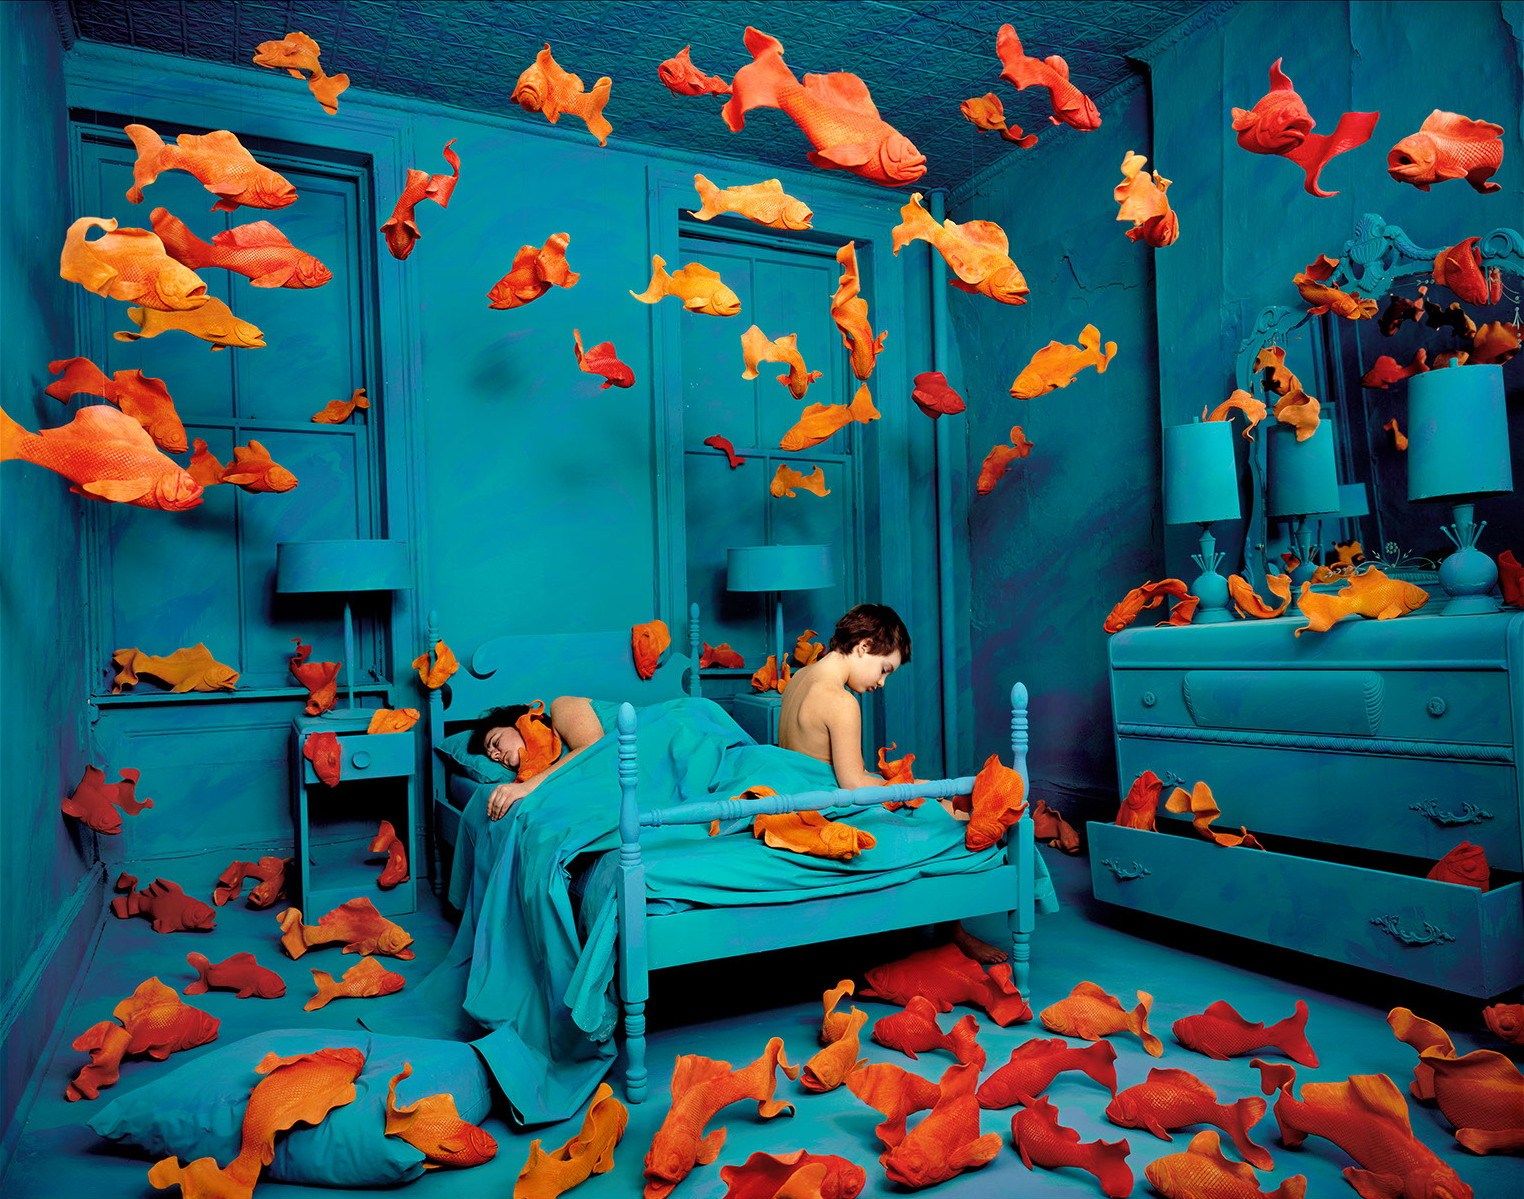 carta da parati a tema pesce,arancia,blu,turchese,camera,alzavola